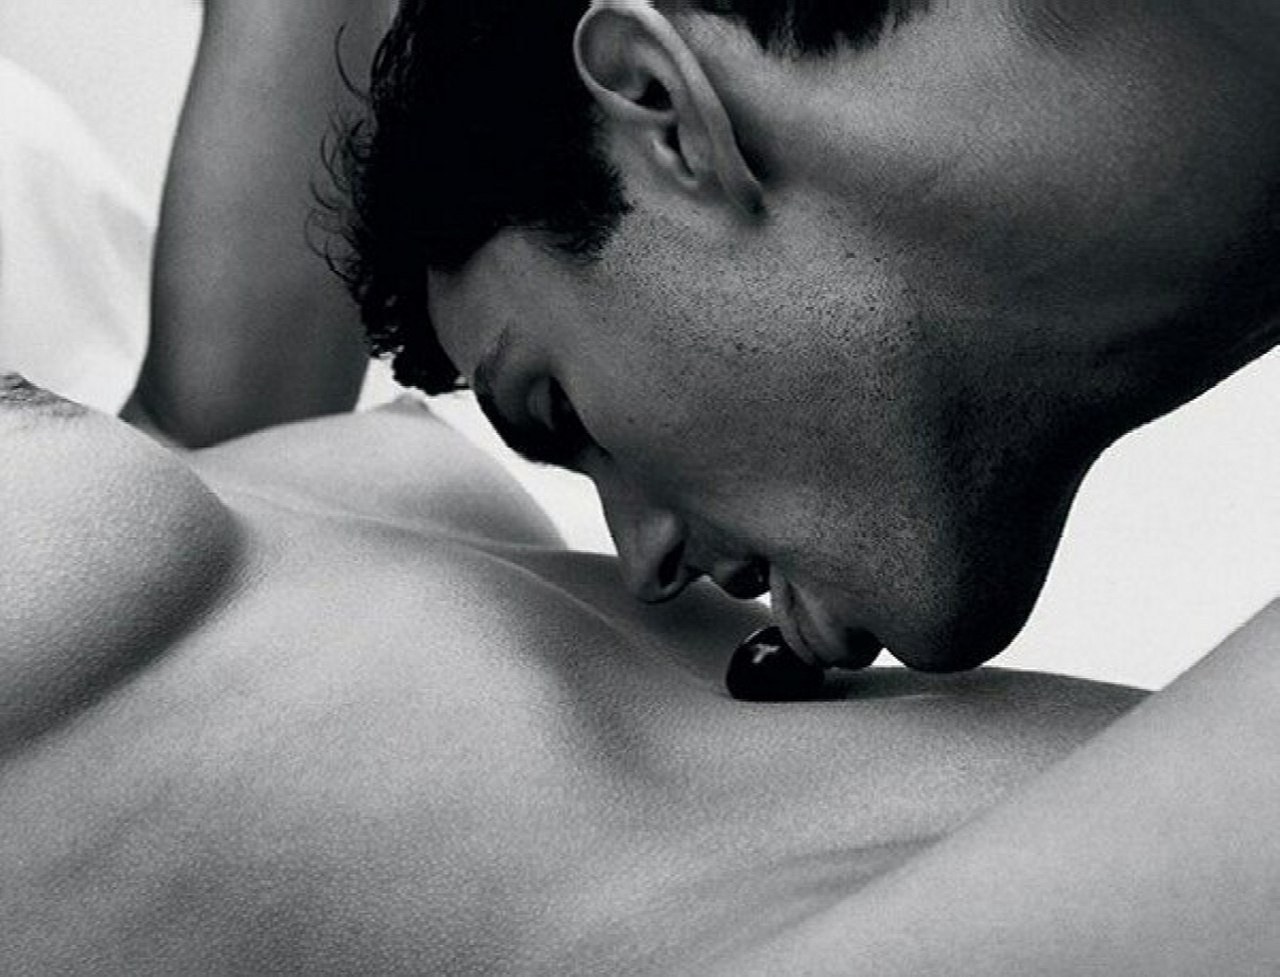 Поцелуй между мужчиной и женщиной (74 фото) - Порно фото голых девушек